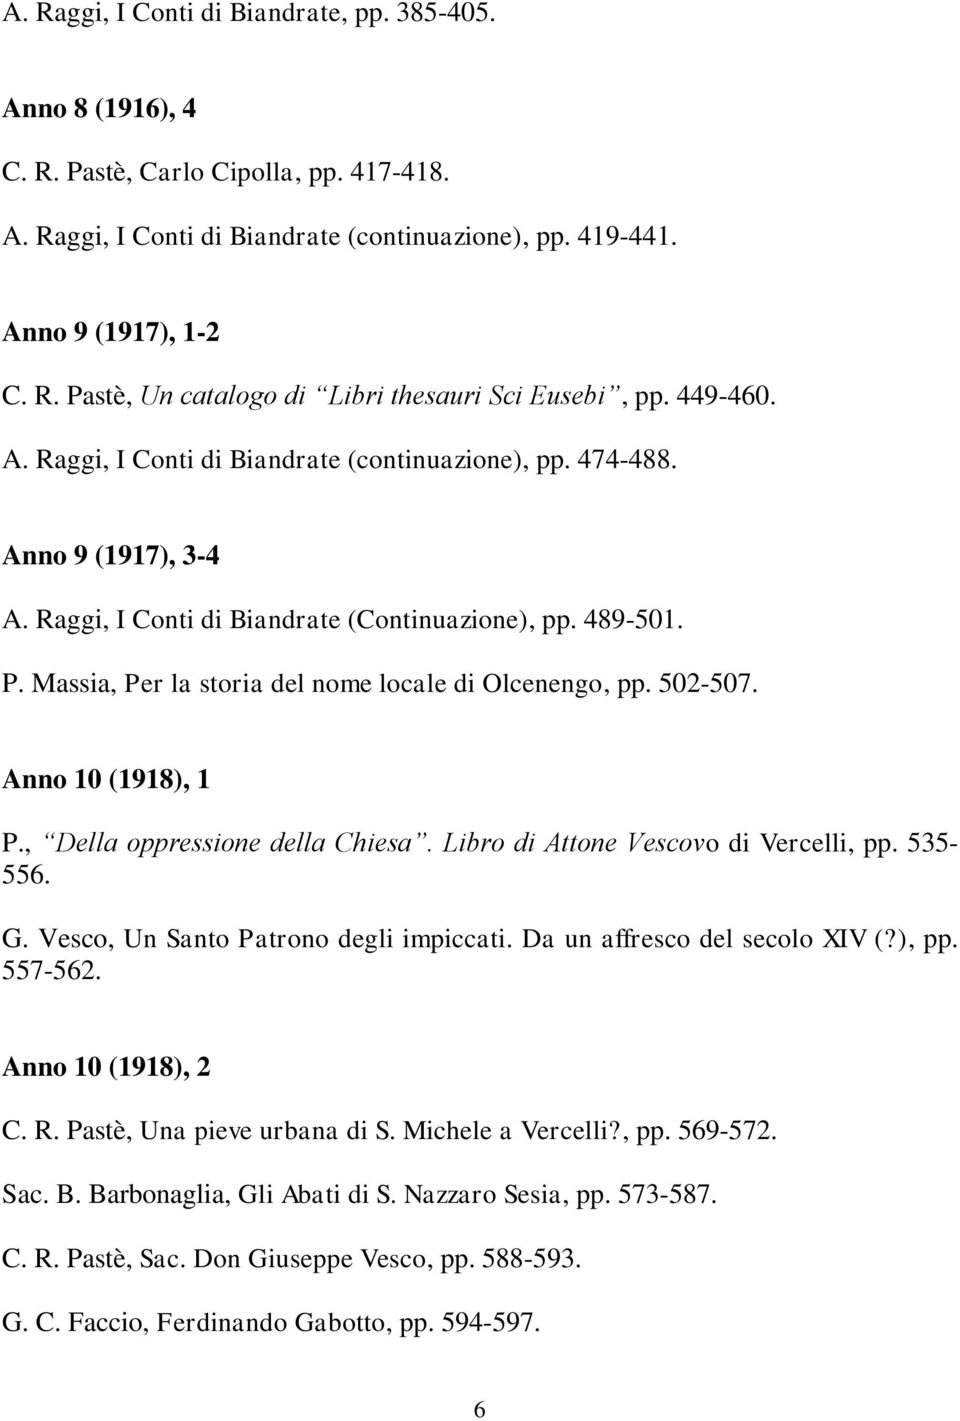 Massia, Per la storia del nome locale di Olcenengo, pp. 502-507. Anno 10 (1918), 1 P., Della oppressione della Chiesa. Libro di Attone Vescovo di Vercelli, pp. 535-556. G.